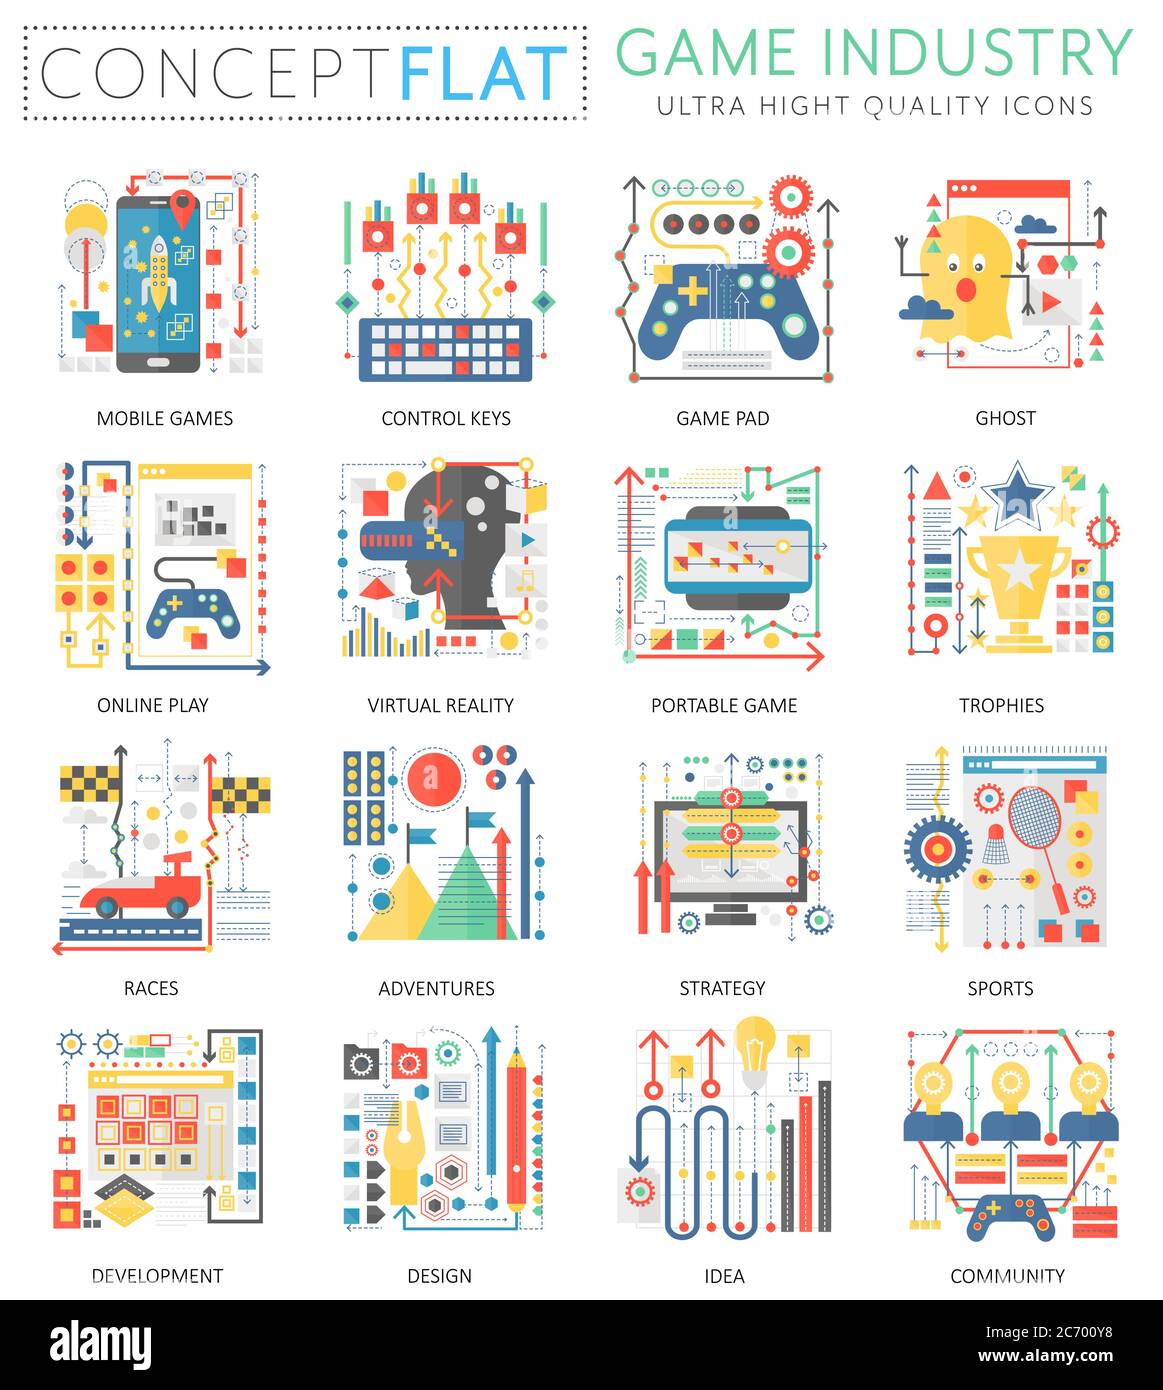 Infografiken Mini Konzept Spiel Industrie-Icons für Web. Premium-Qualität Farbe konzeptionelle flache Design Web-Grafiken Symbole Elemente. Konzepte der Spieleindustrie Stock Vektor